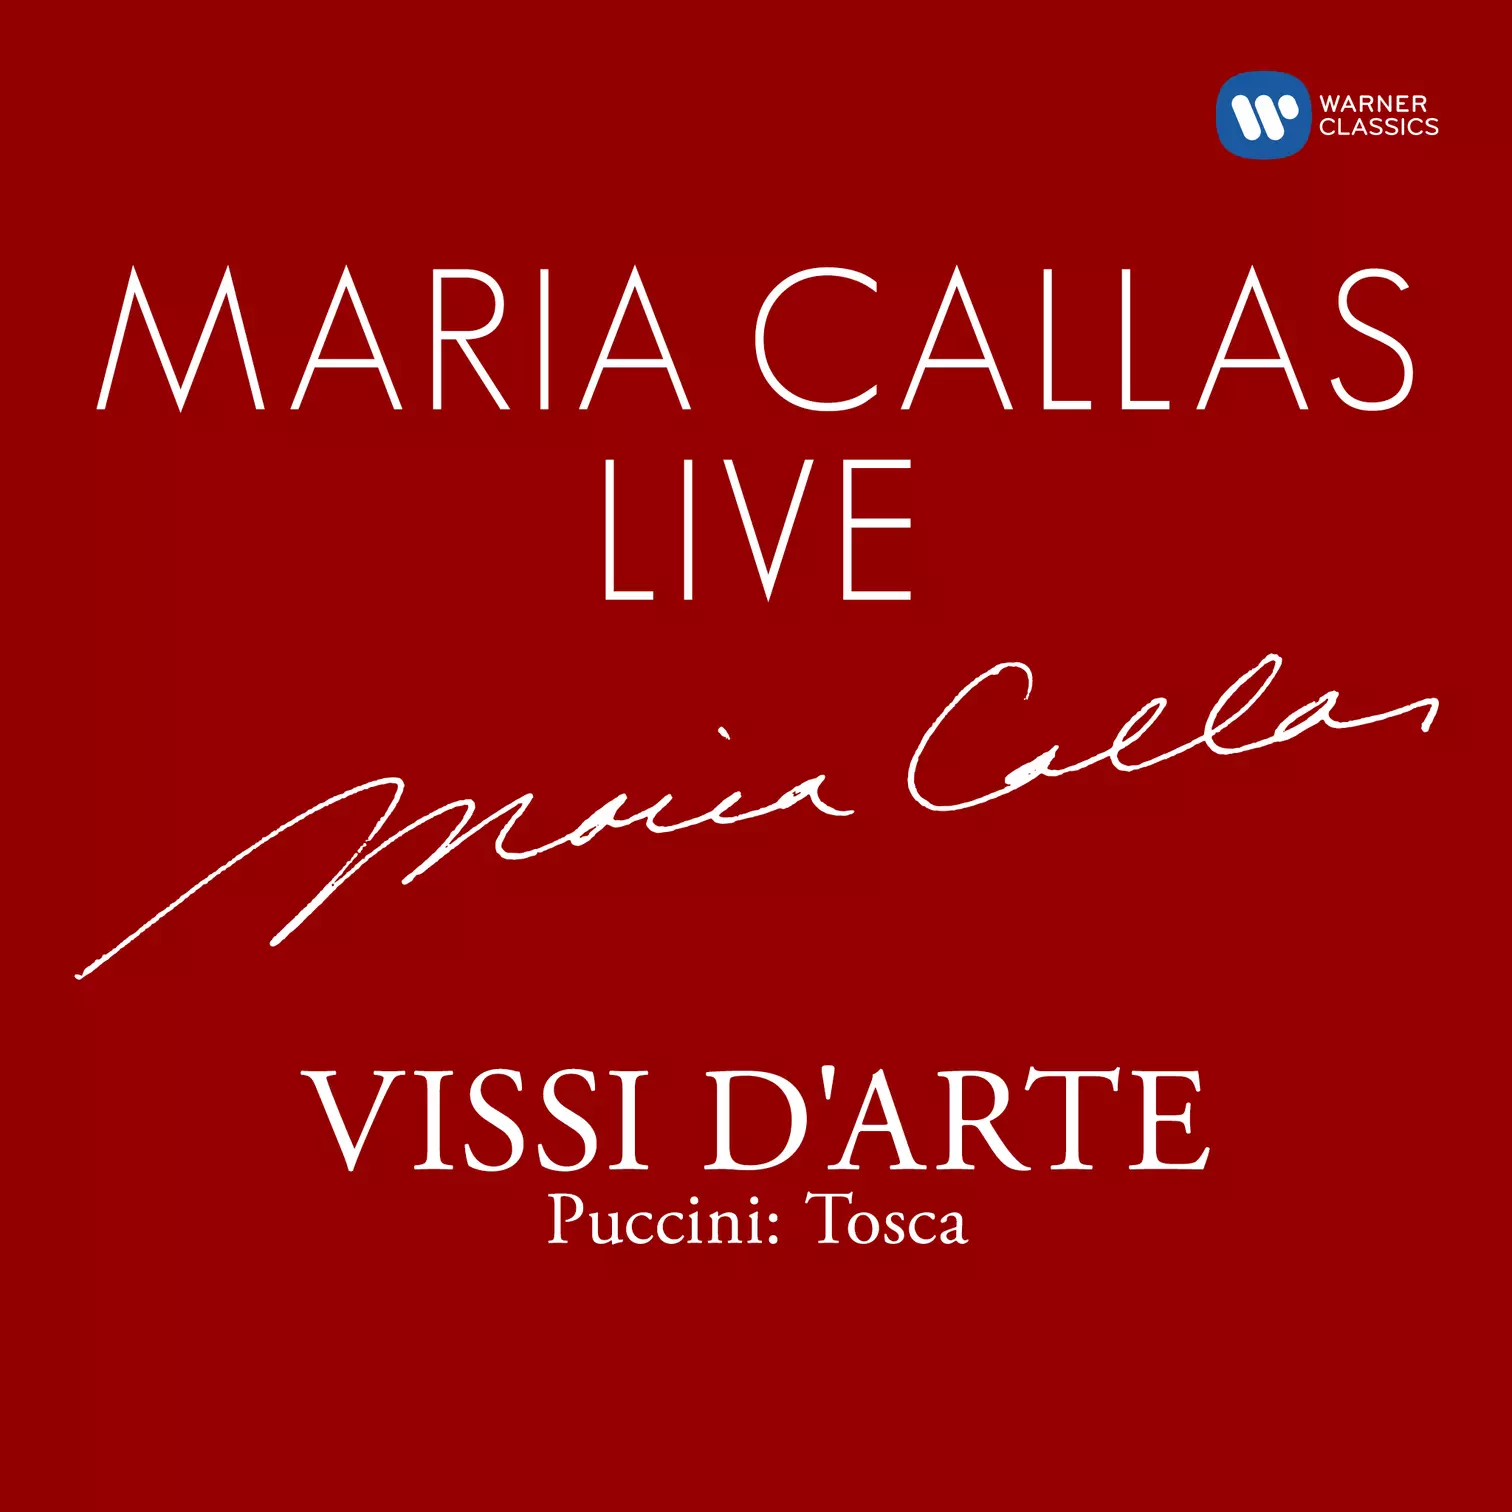 Maria Callas Live Vissi d'arte